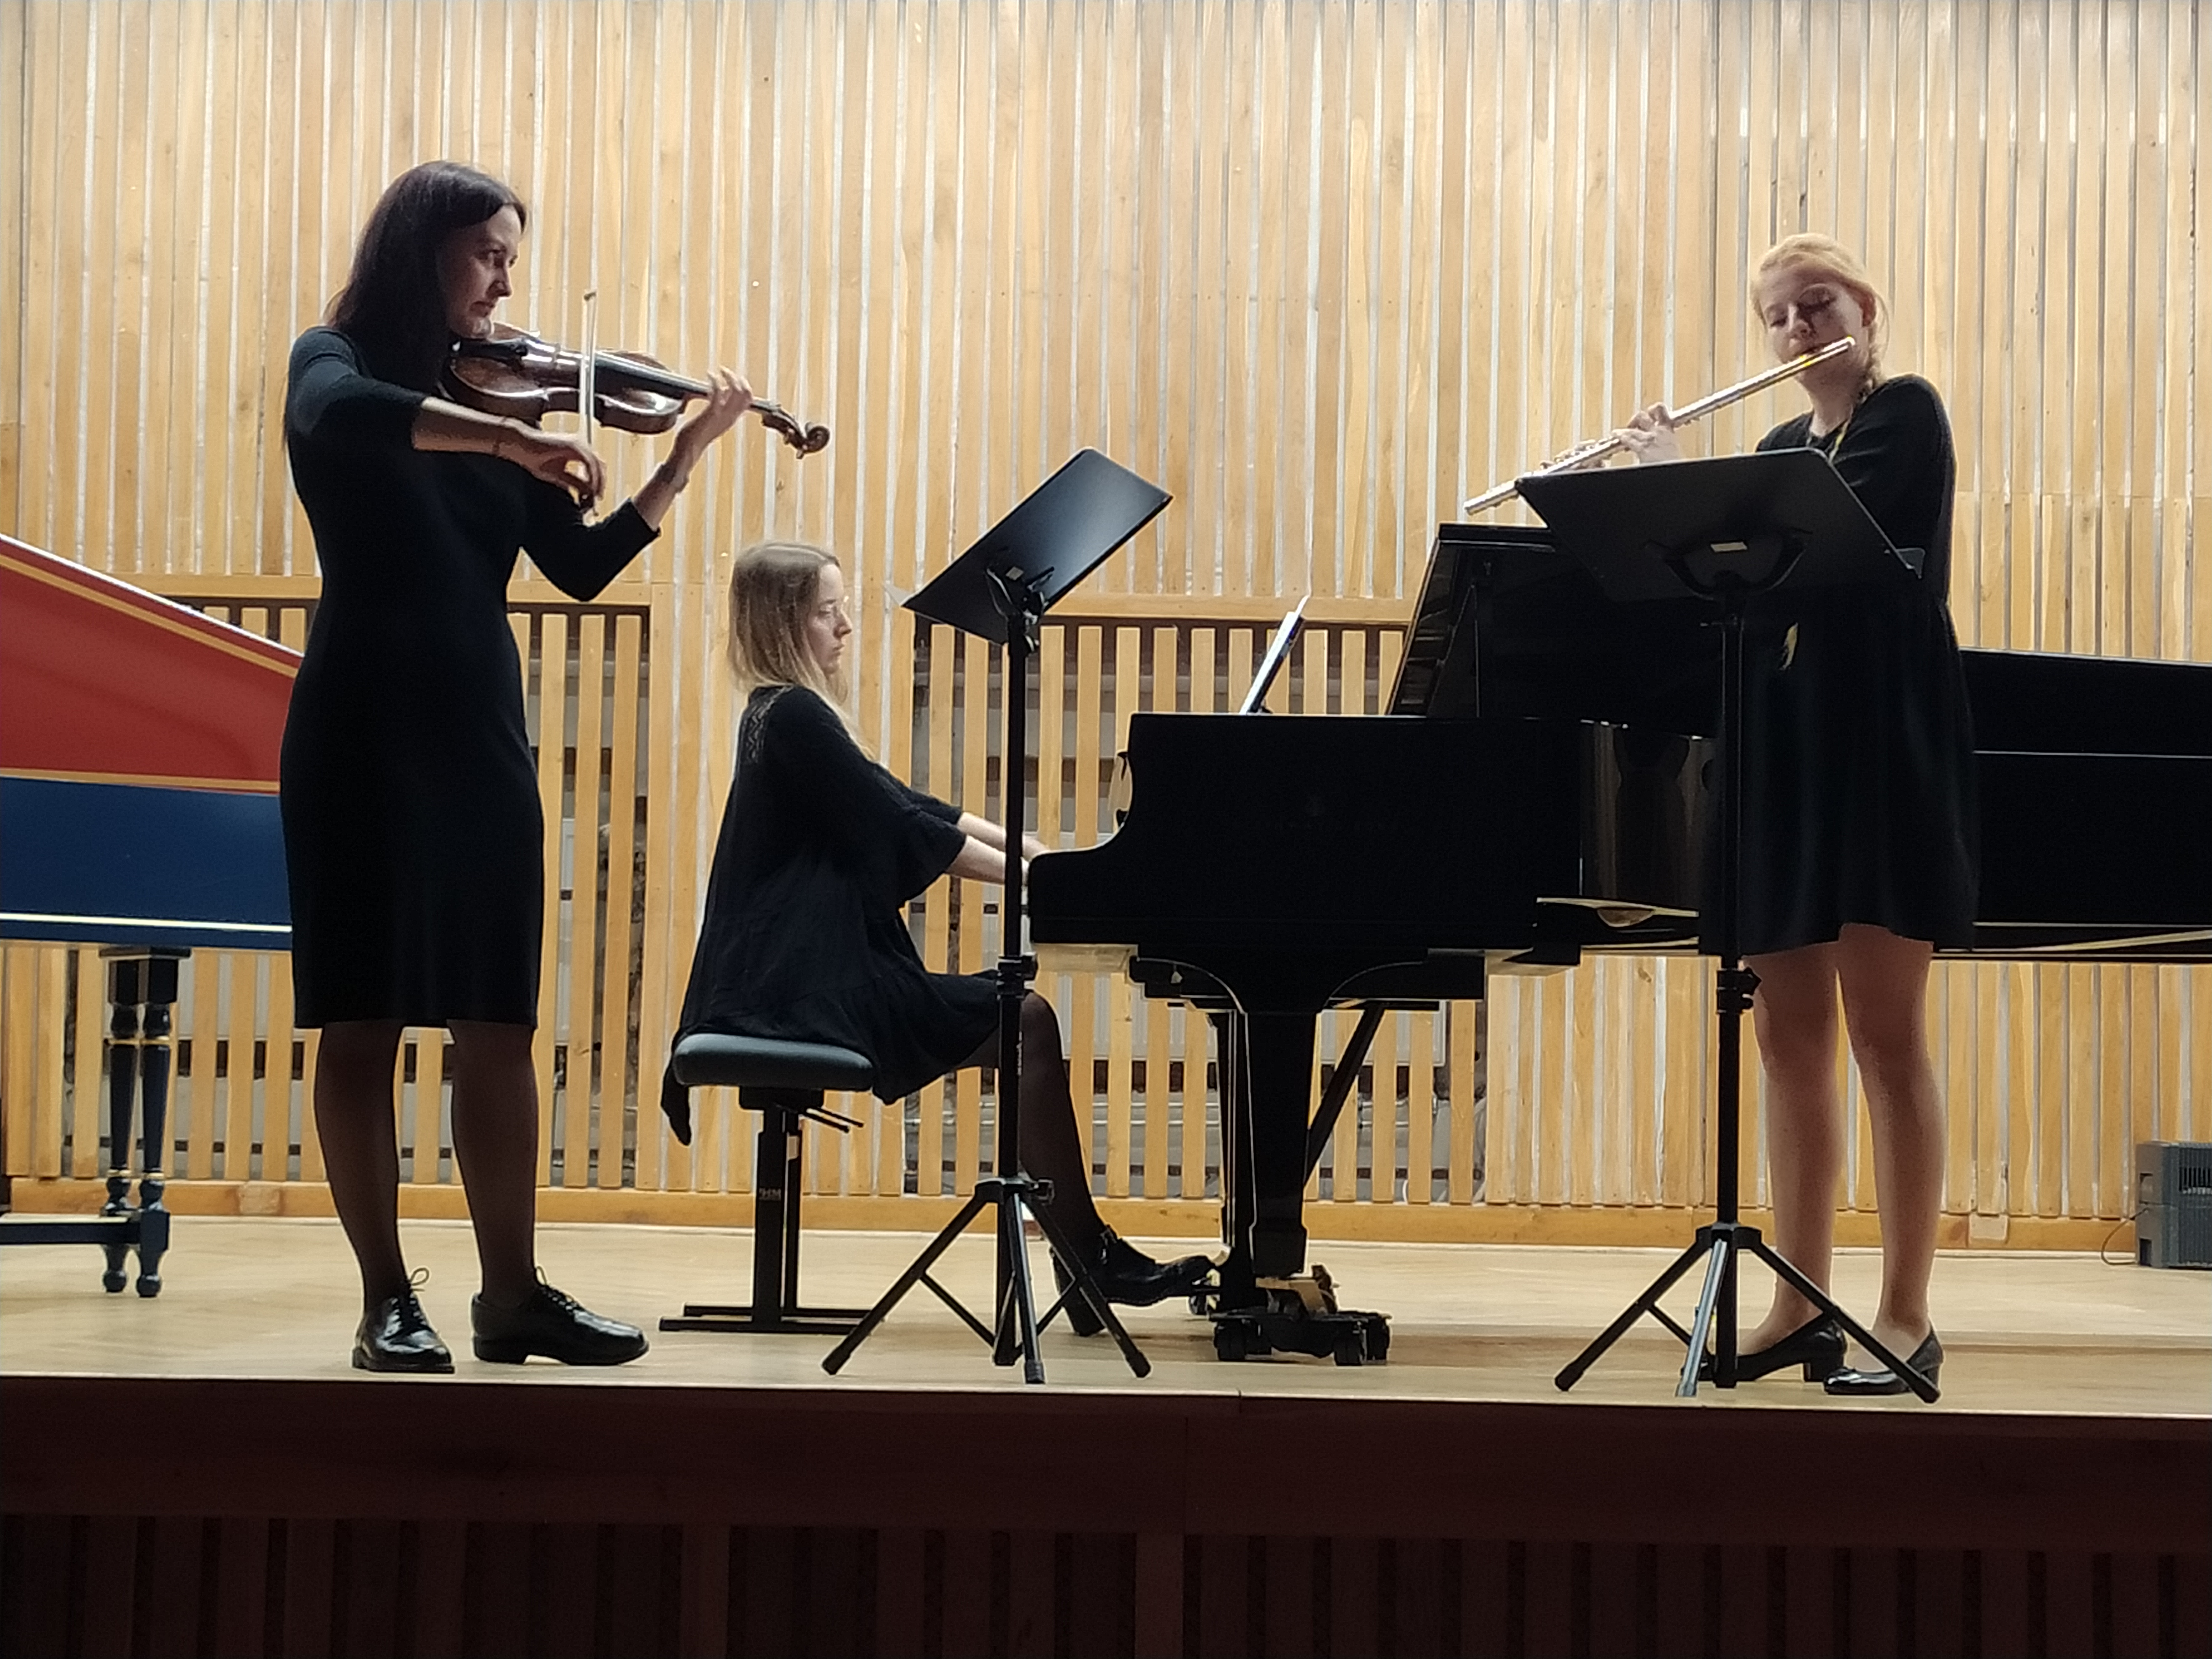 Trio muzyczne na scenie, jedna kobieta gra na skrzypcach, druga na fortepianie, a trzeba na flecie.